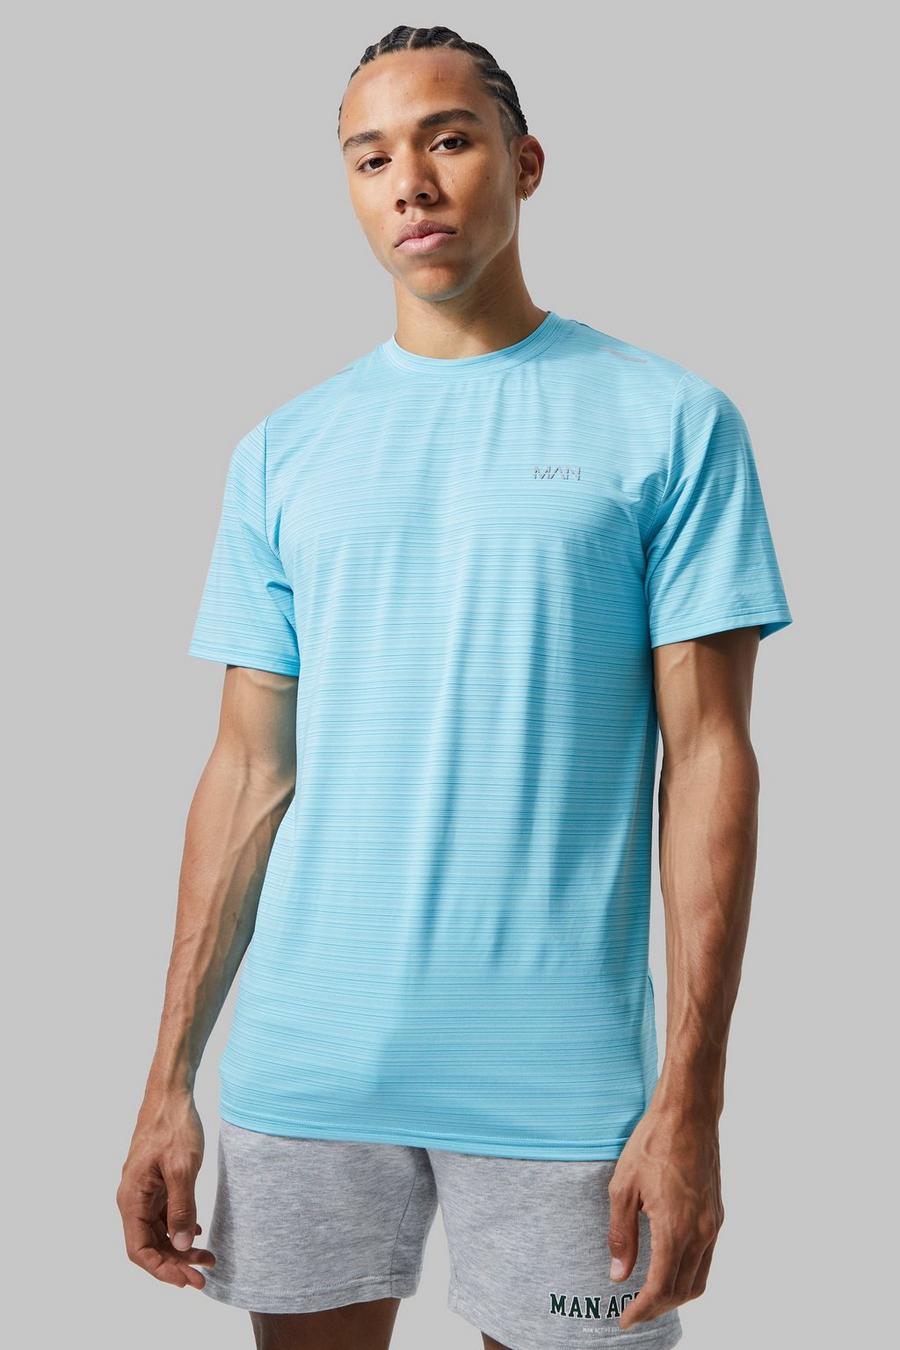 Tall Man Active Lightweight Performance T-Shirt, Light blue bleu